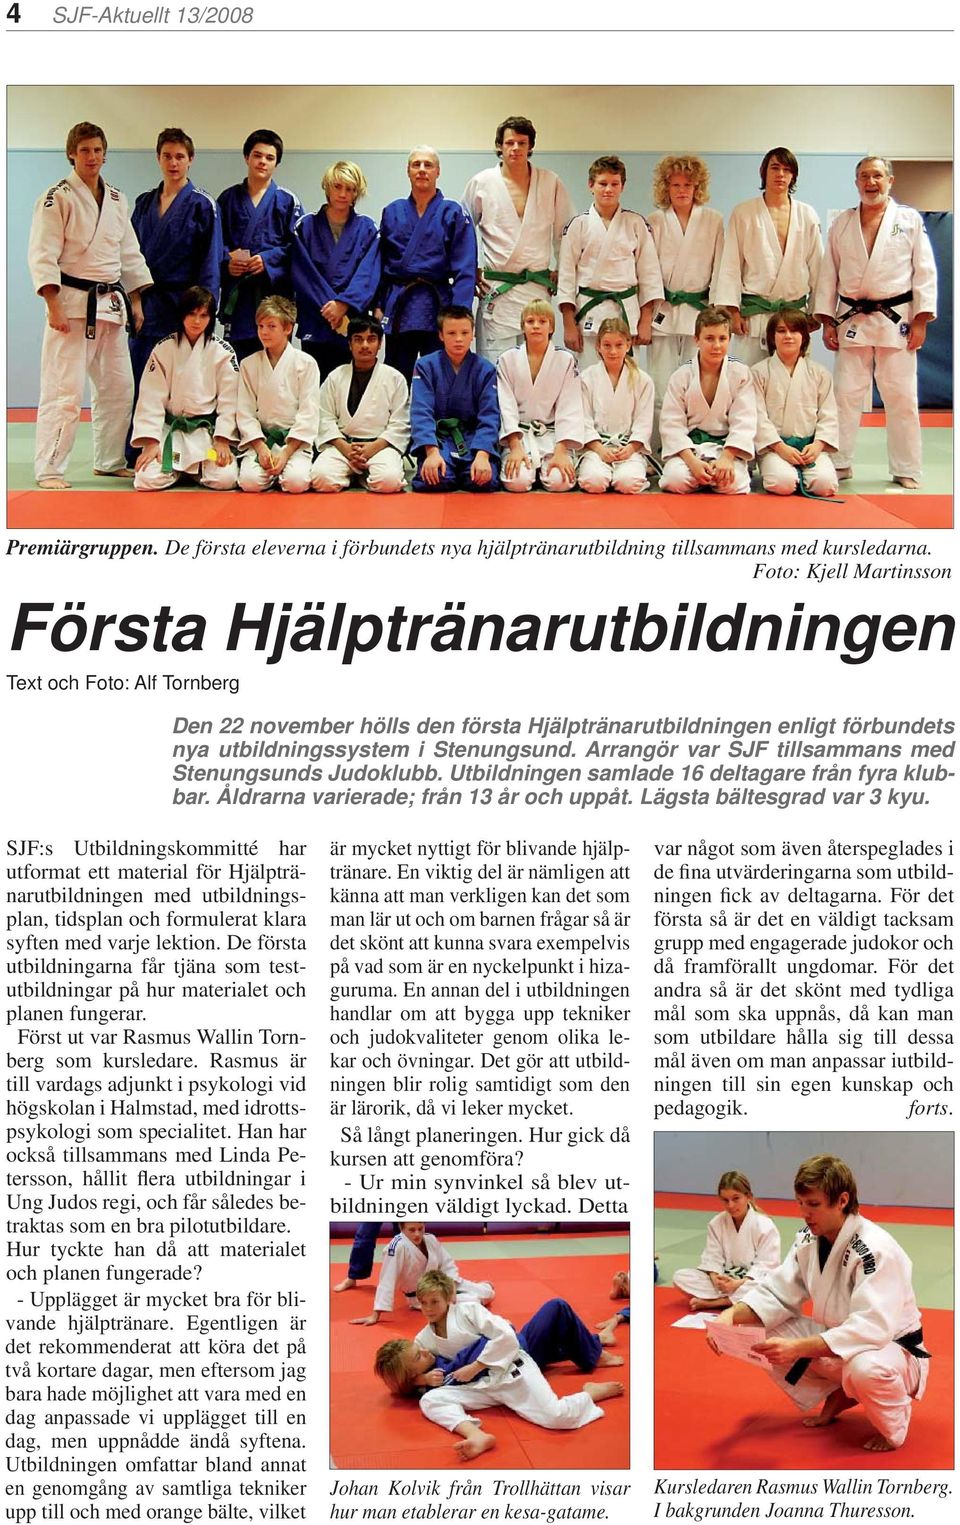 Arrangör var SJF tillsammans med Stenungsunds Judoklubb. Utbildningen samlade 16 deltagare från fyra klubbar. Åldrarna varierade; från 13 år och uppåt. Lägsta bältesgrad var 3 kyu.